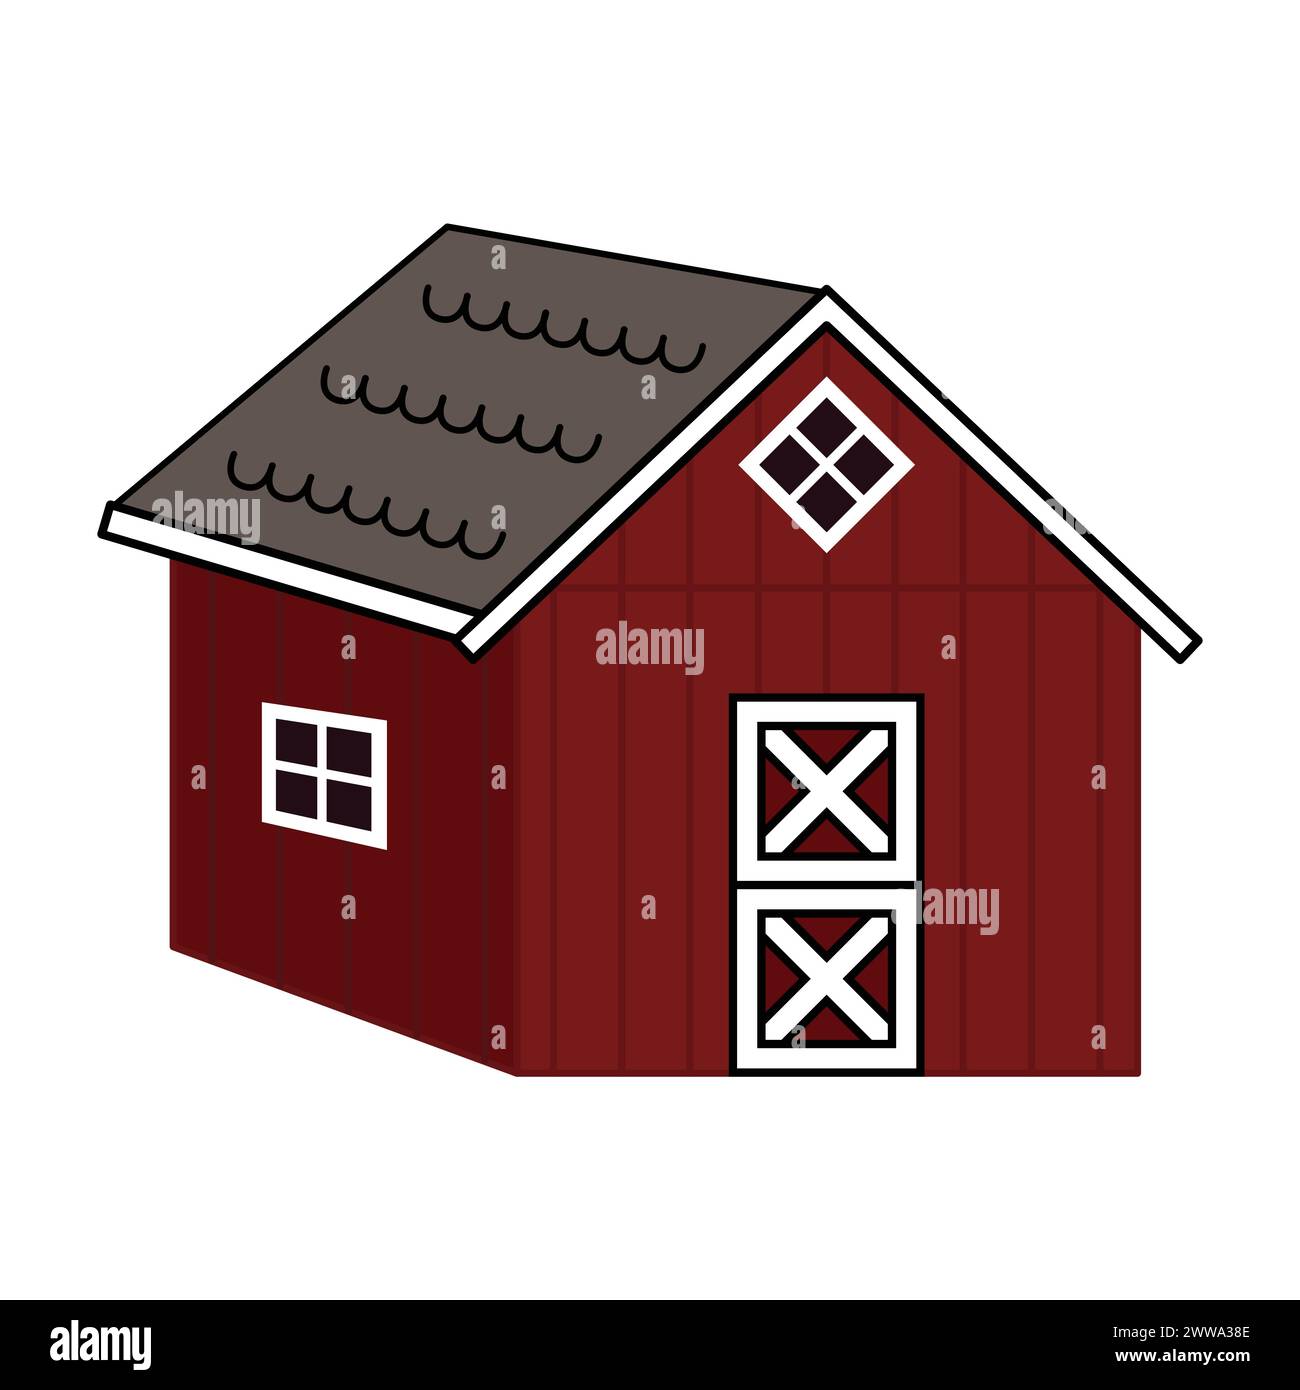 Vektor Holz Bauernhof Scheune Haus Symbol. Isolierte Zeichentrickillustration des roten Kreuzbretthauses auf weißem Hintergrund Stock Vektor